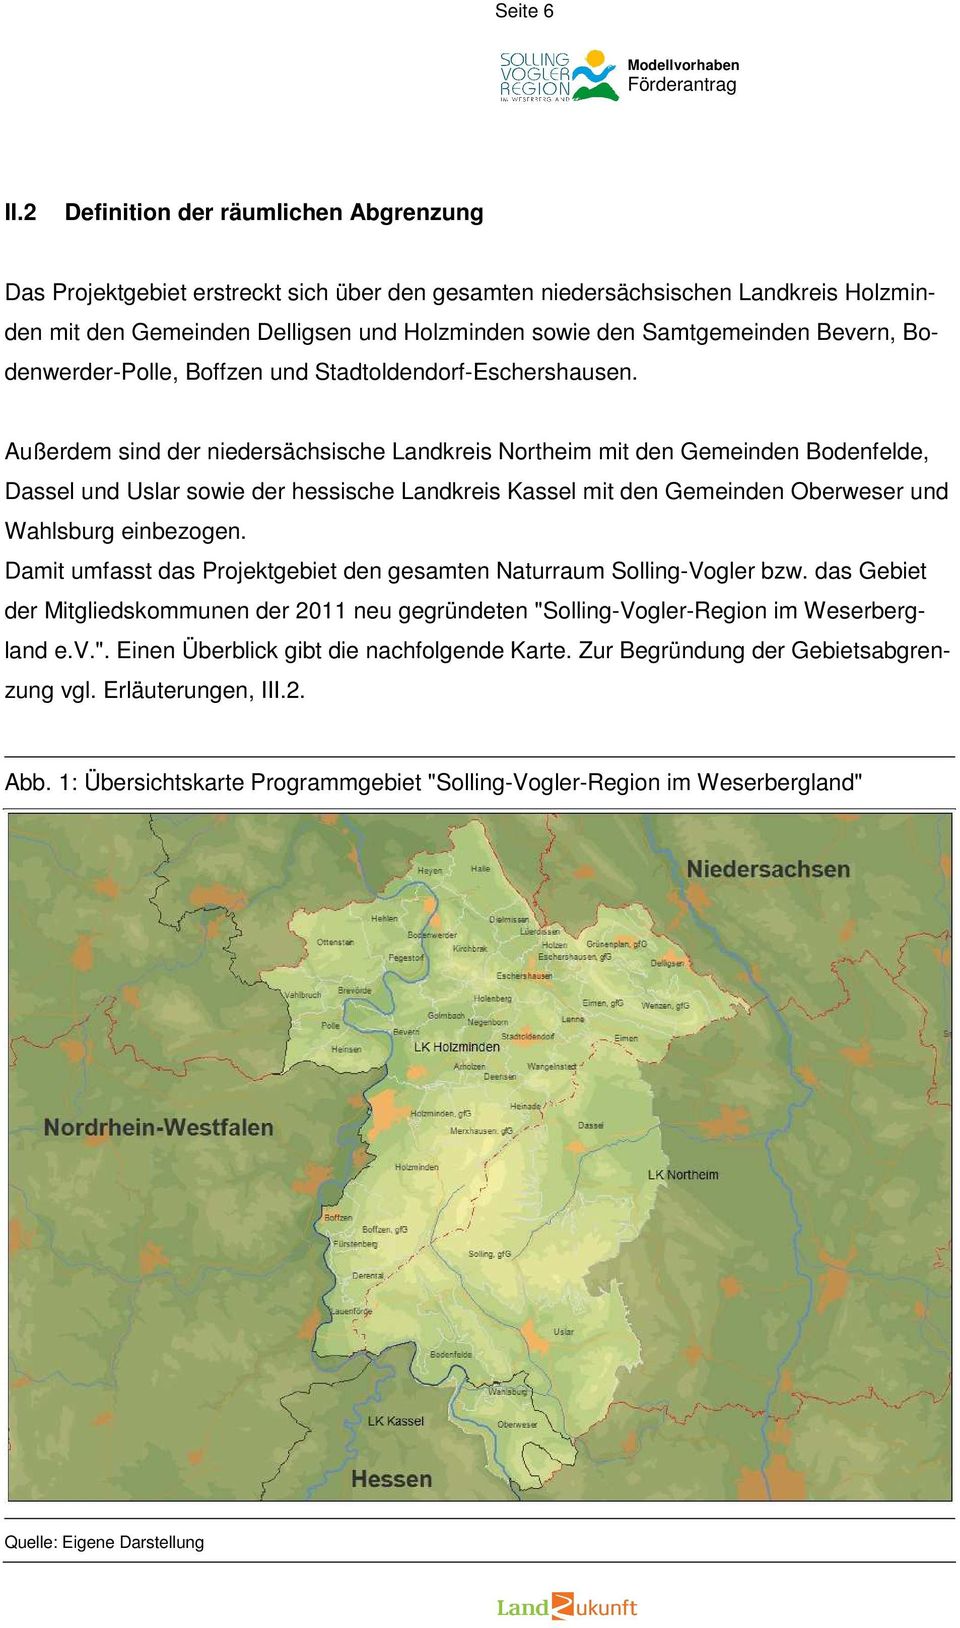 Bevern, Bodenwerder-Polle, Boffzen und Stadtoldendorf-Eschershausen.